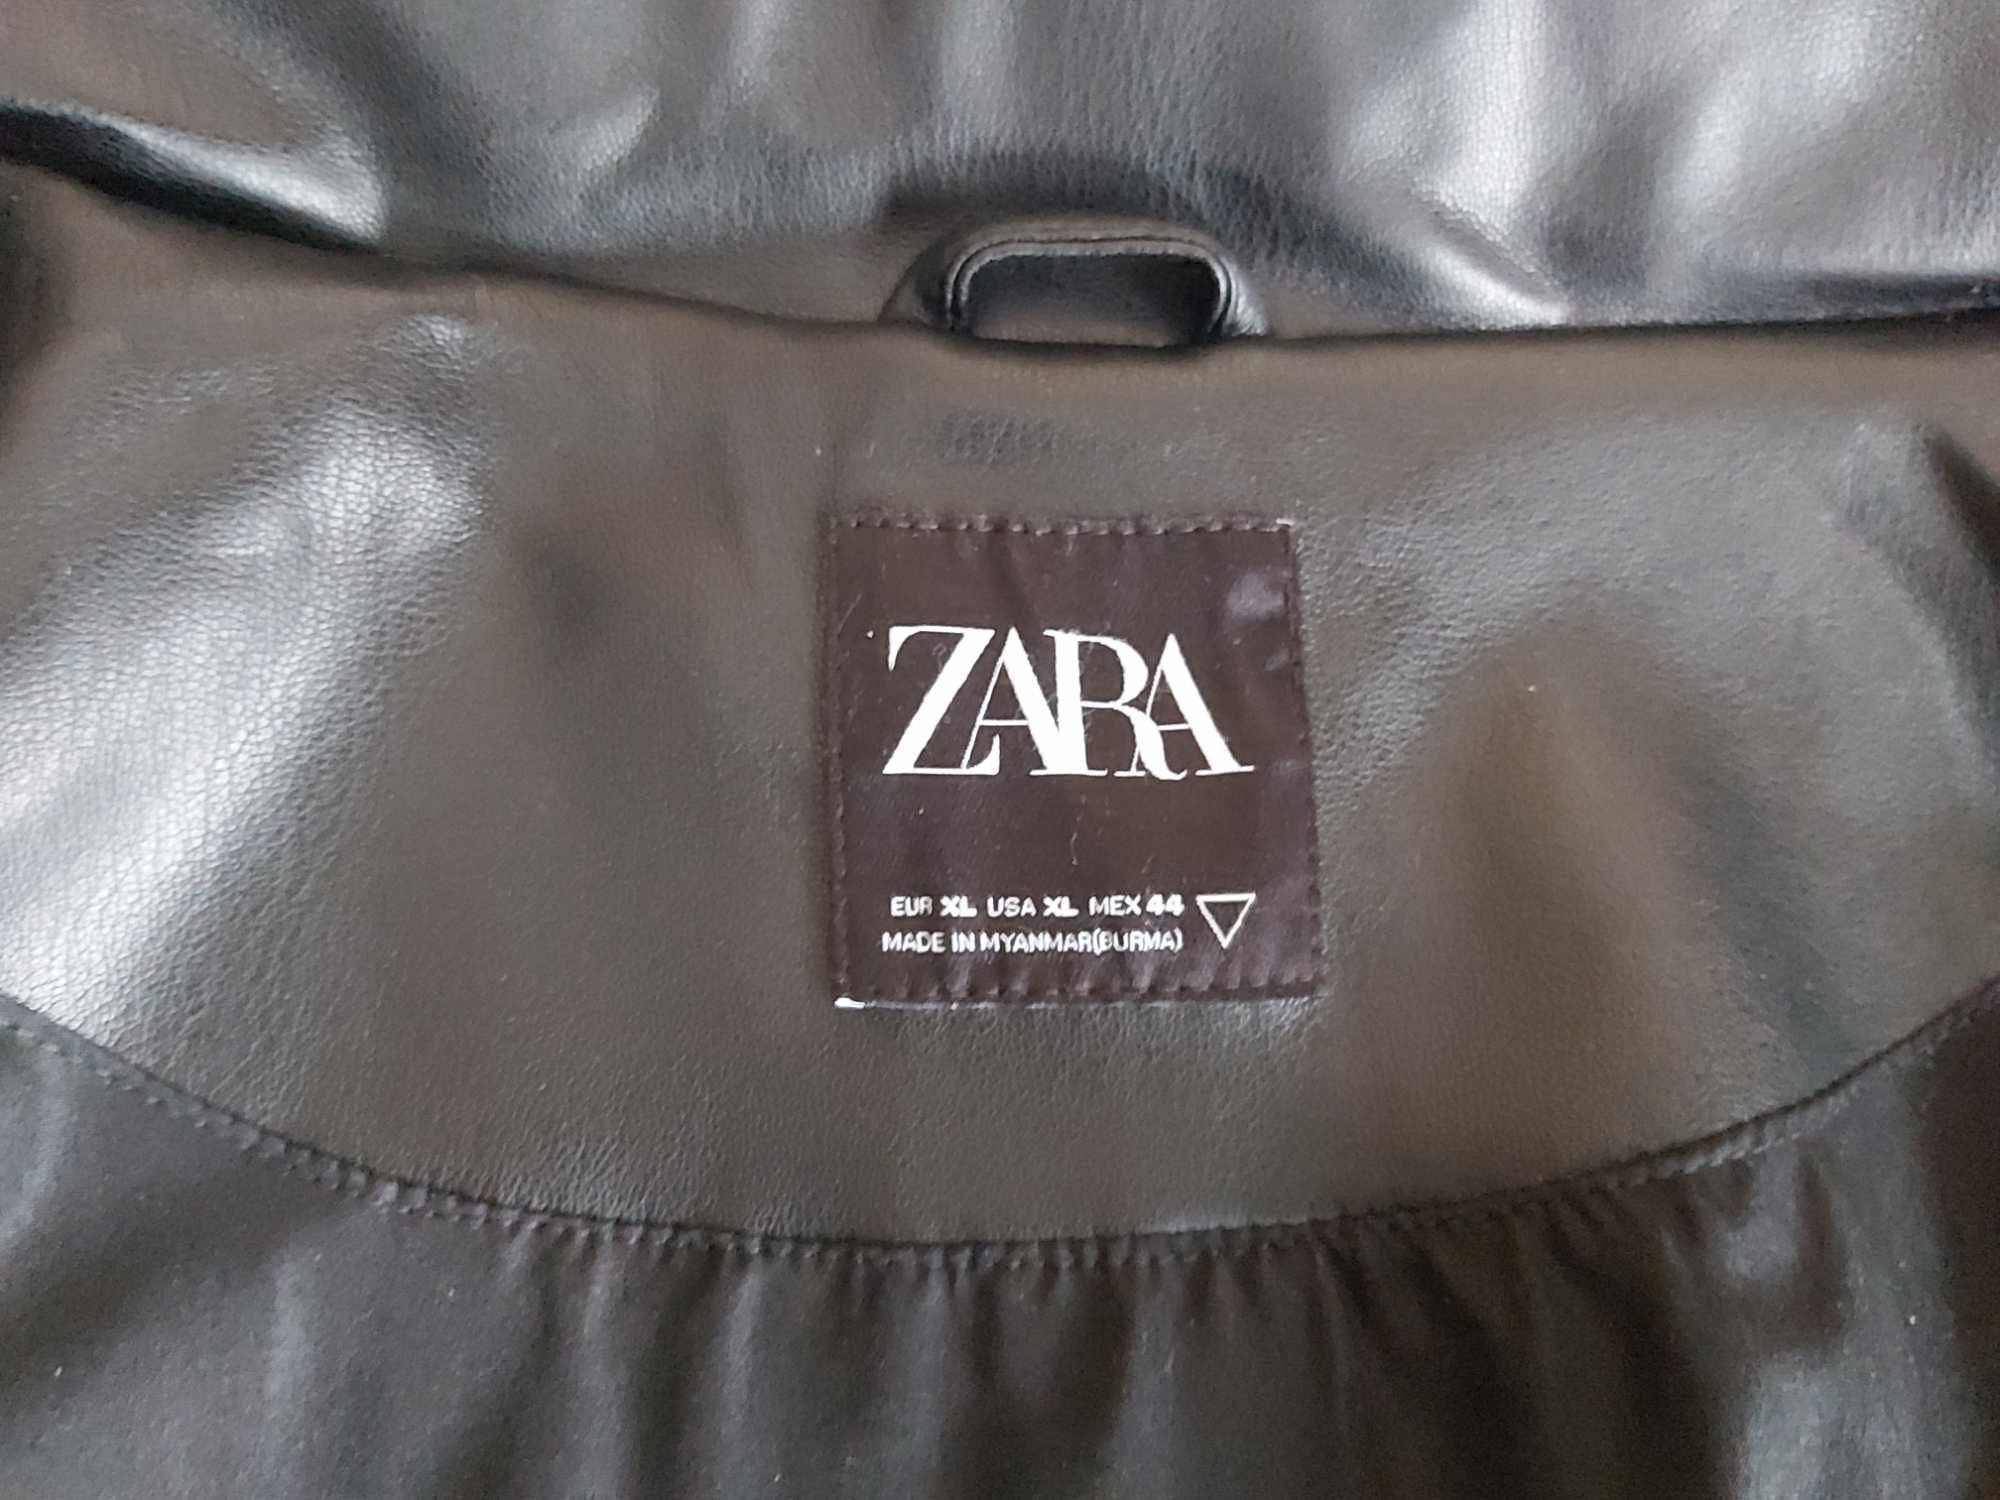 Kurtka męska zimowa firmy "Zara".